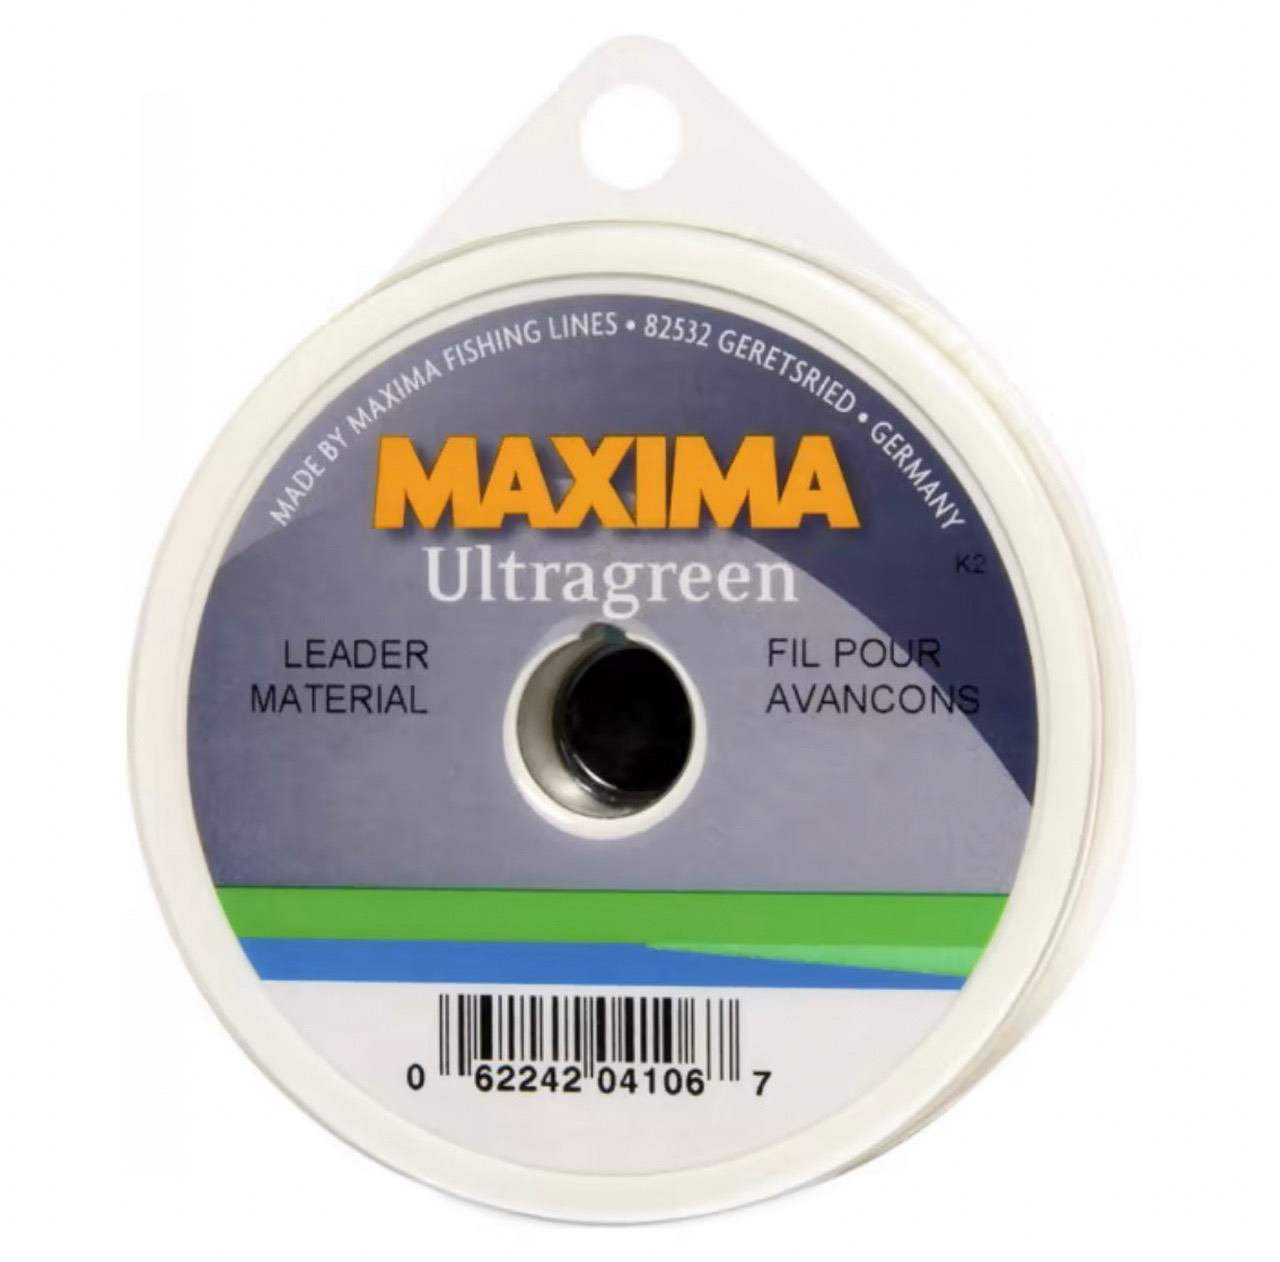 Maxima Ultragreen Leader Material - 25m - 3lb